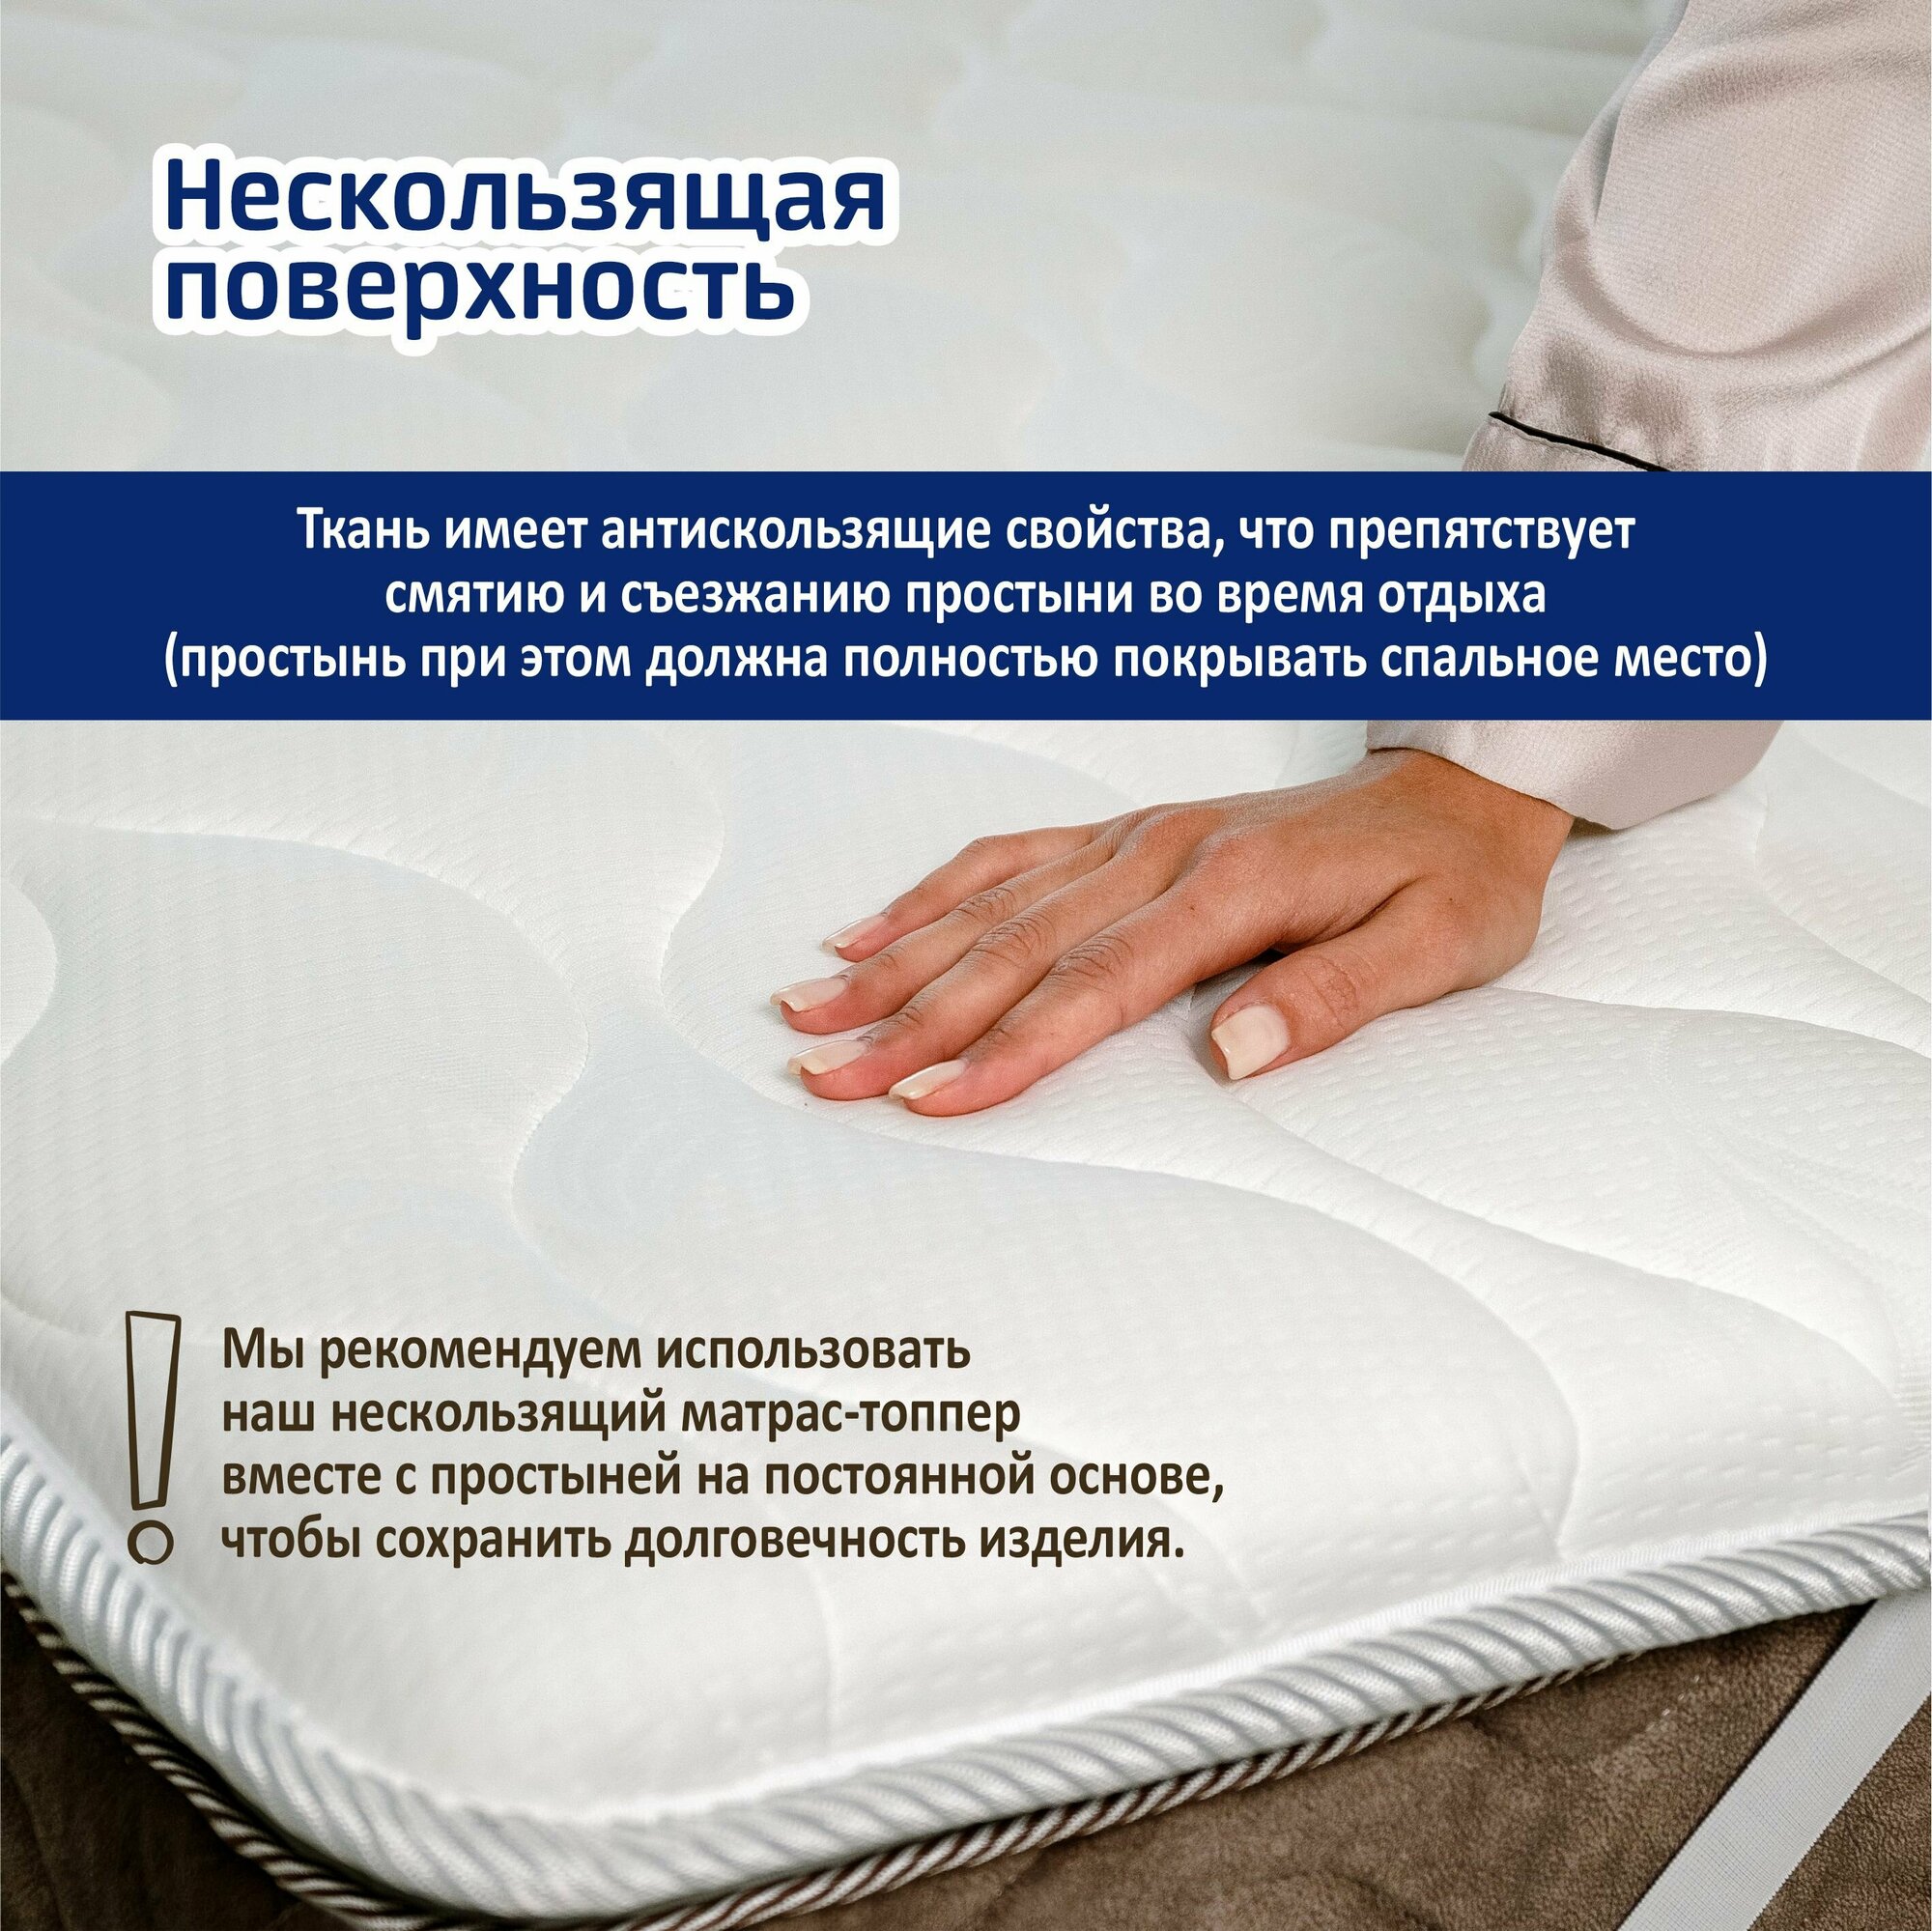 Ортопедический матрас-топпер 5 см Sonito Normax5 для дивана, кровати, 140х200 см, беспружинный, наматрасник